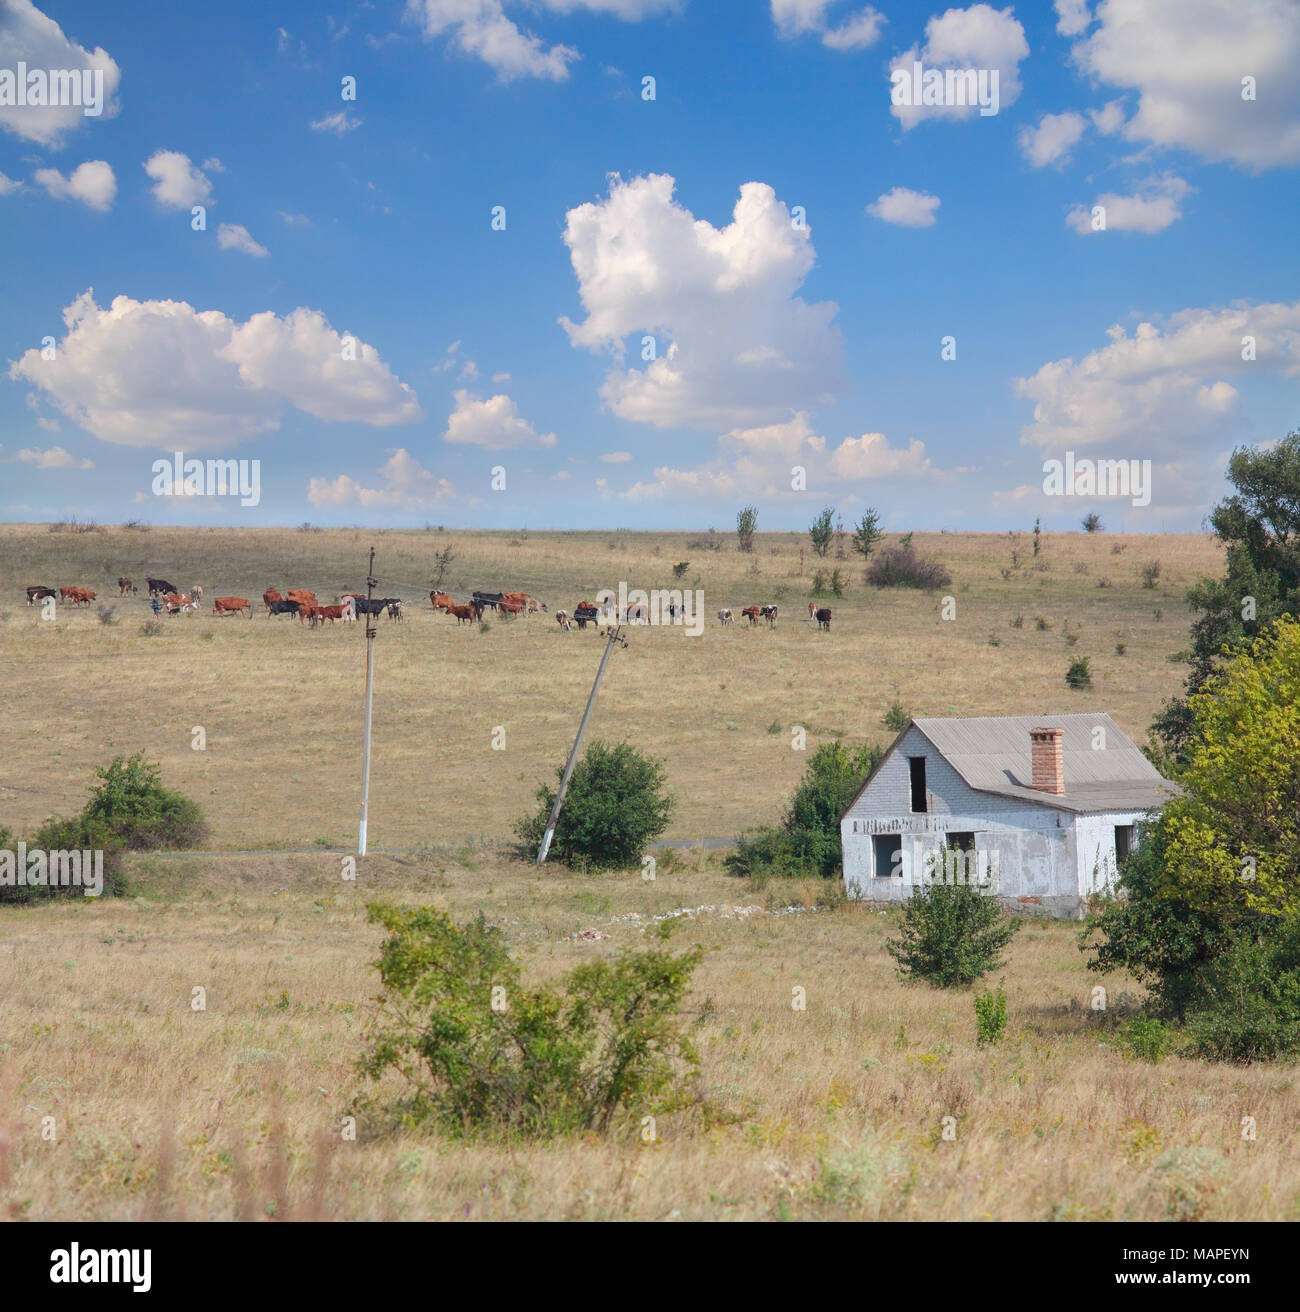 Paesaggio di steppa, casa abbandonata, una mandria di mucche contro il cielo blu con nuvole Foto Stock